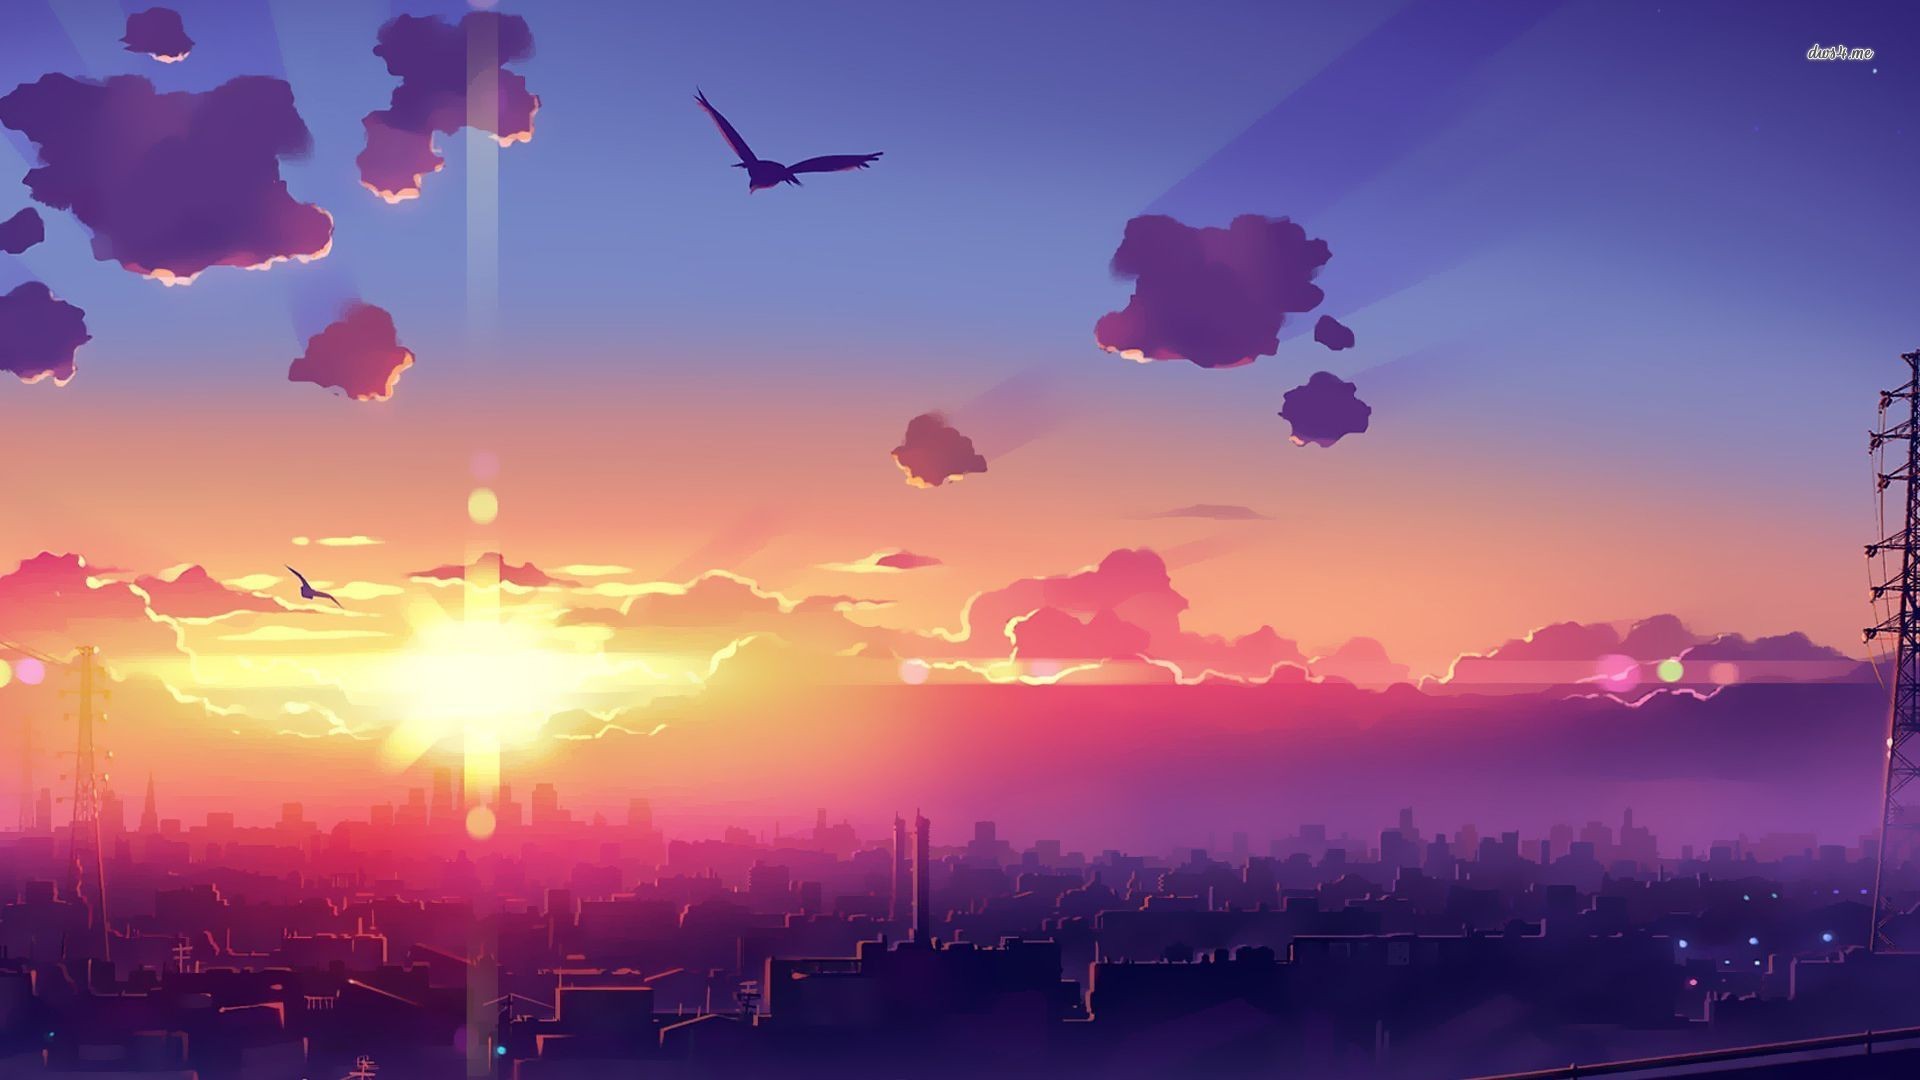 アニメの世界の壁紙,空,雲,残照,紫の,地平線